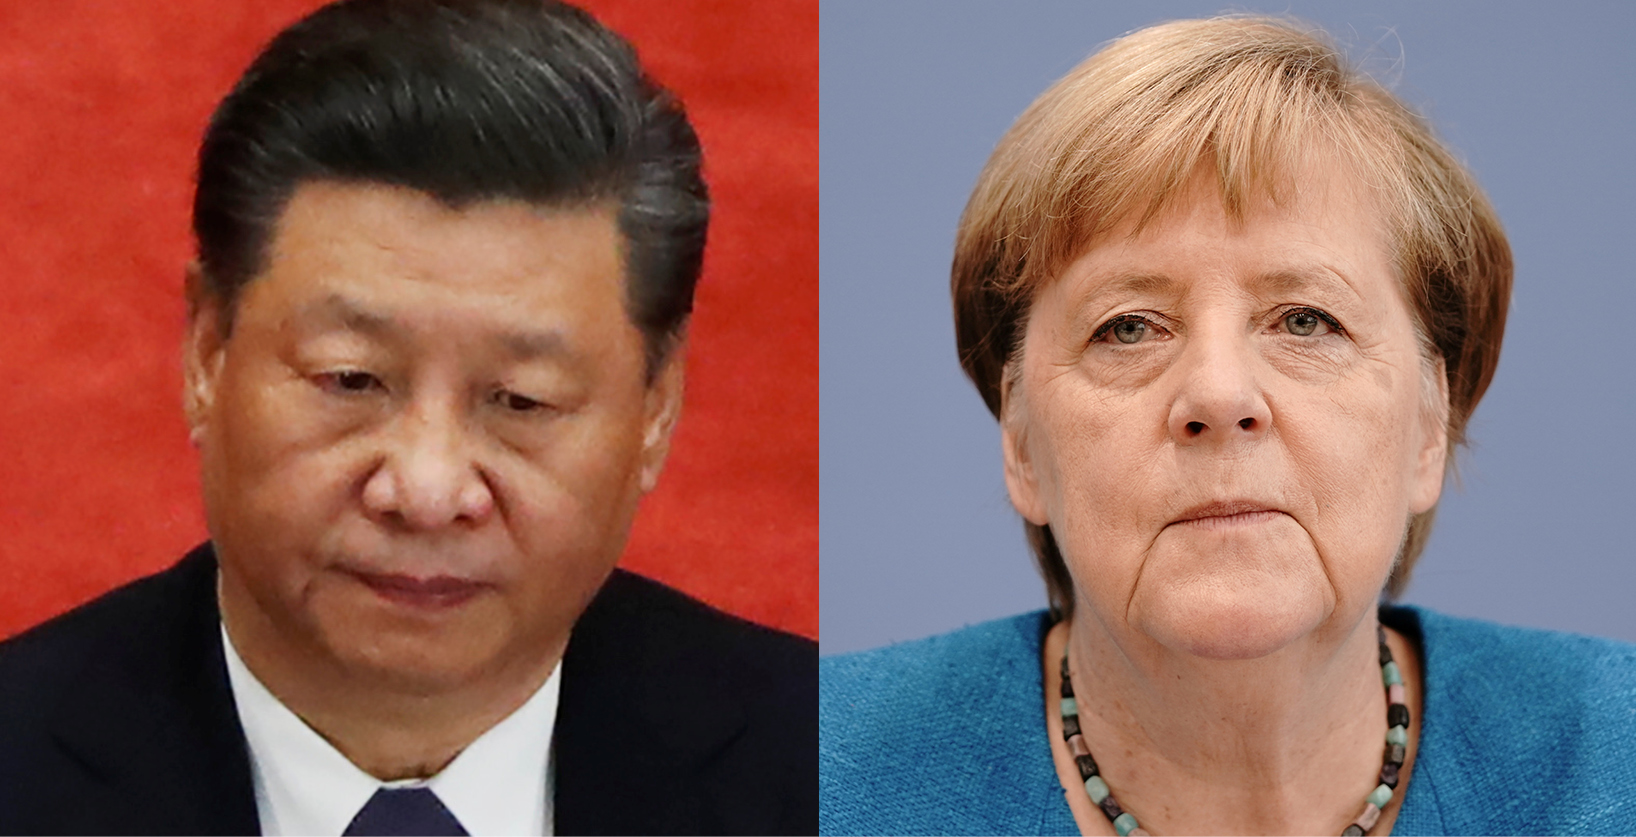 Sommet Chine-Europe ce lundi : Bruxelles va exiger pour ses entreprises des règles de concurrence équitables